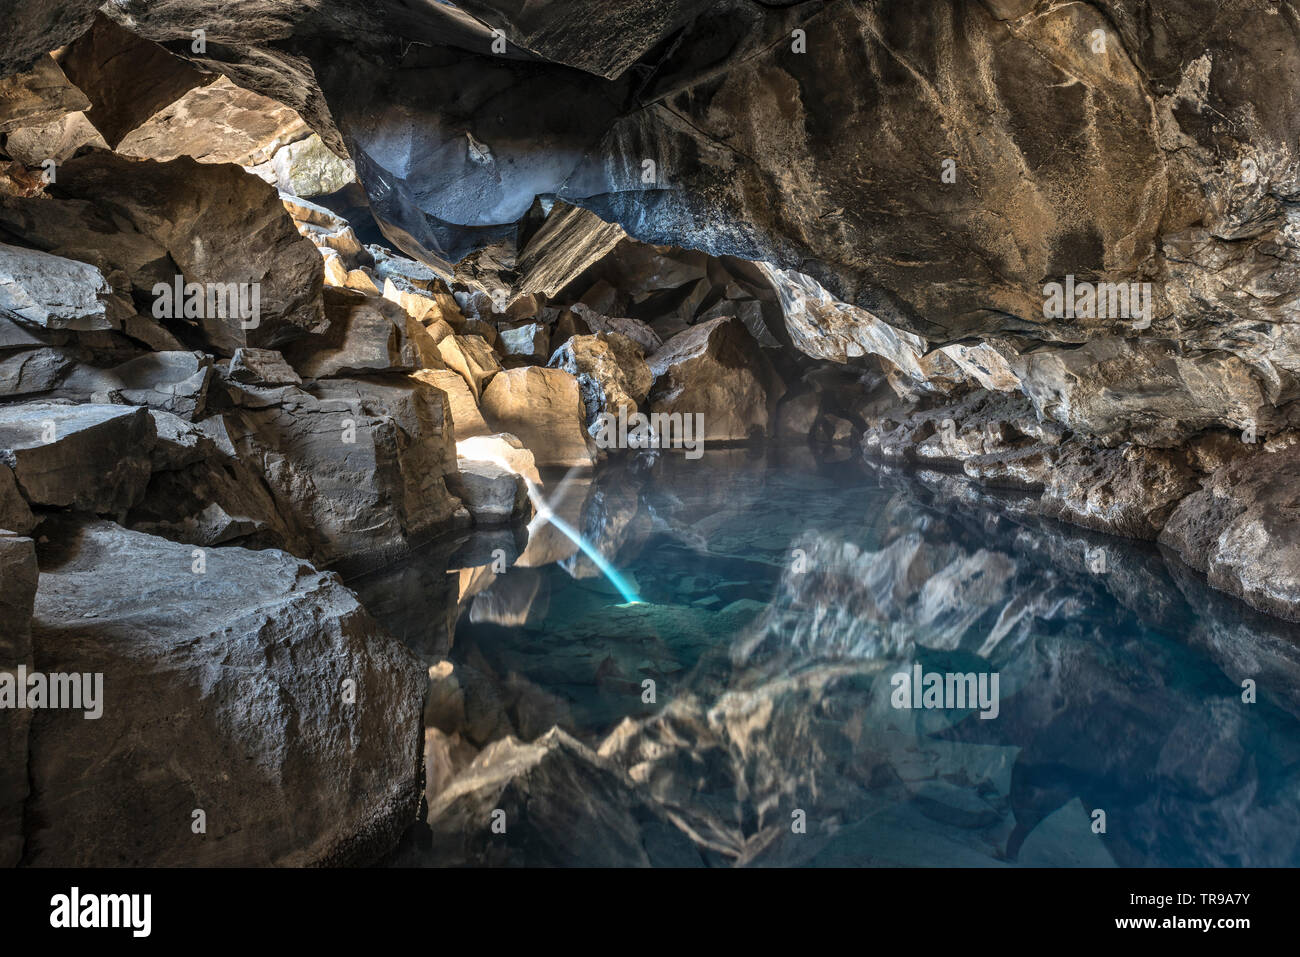 La grotte de lave de Grjótagjá, près du lac Mývatn, en Islande. Une fois qu'un lieu de baignade populaire, l'eau est trop chaude pour la sécurité après l'éruption de 1984 Banque D'Images